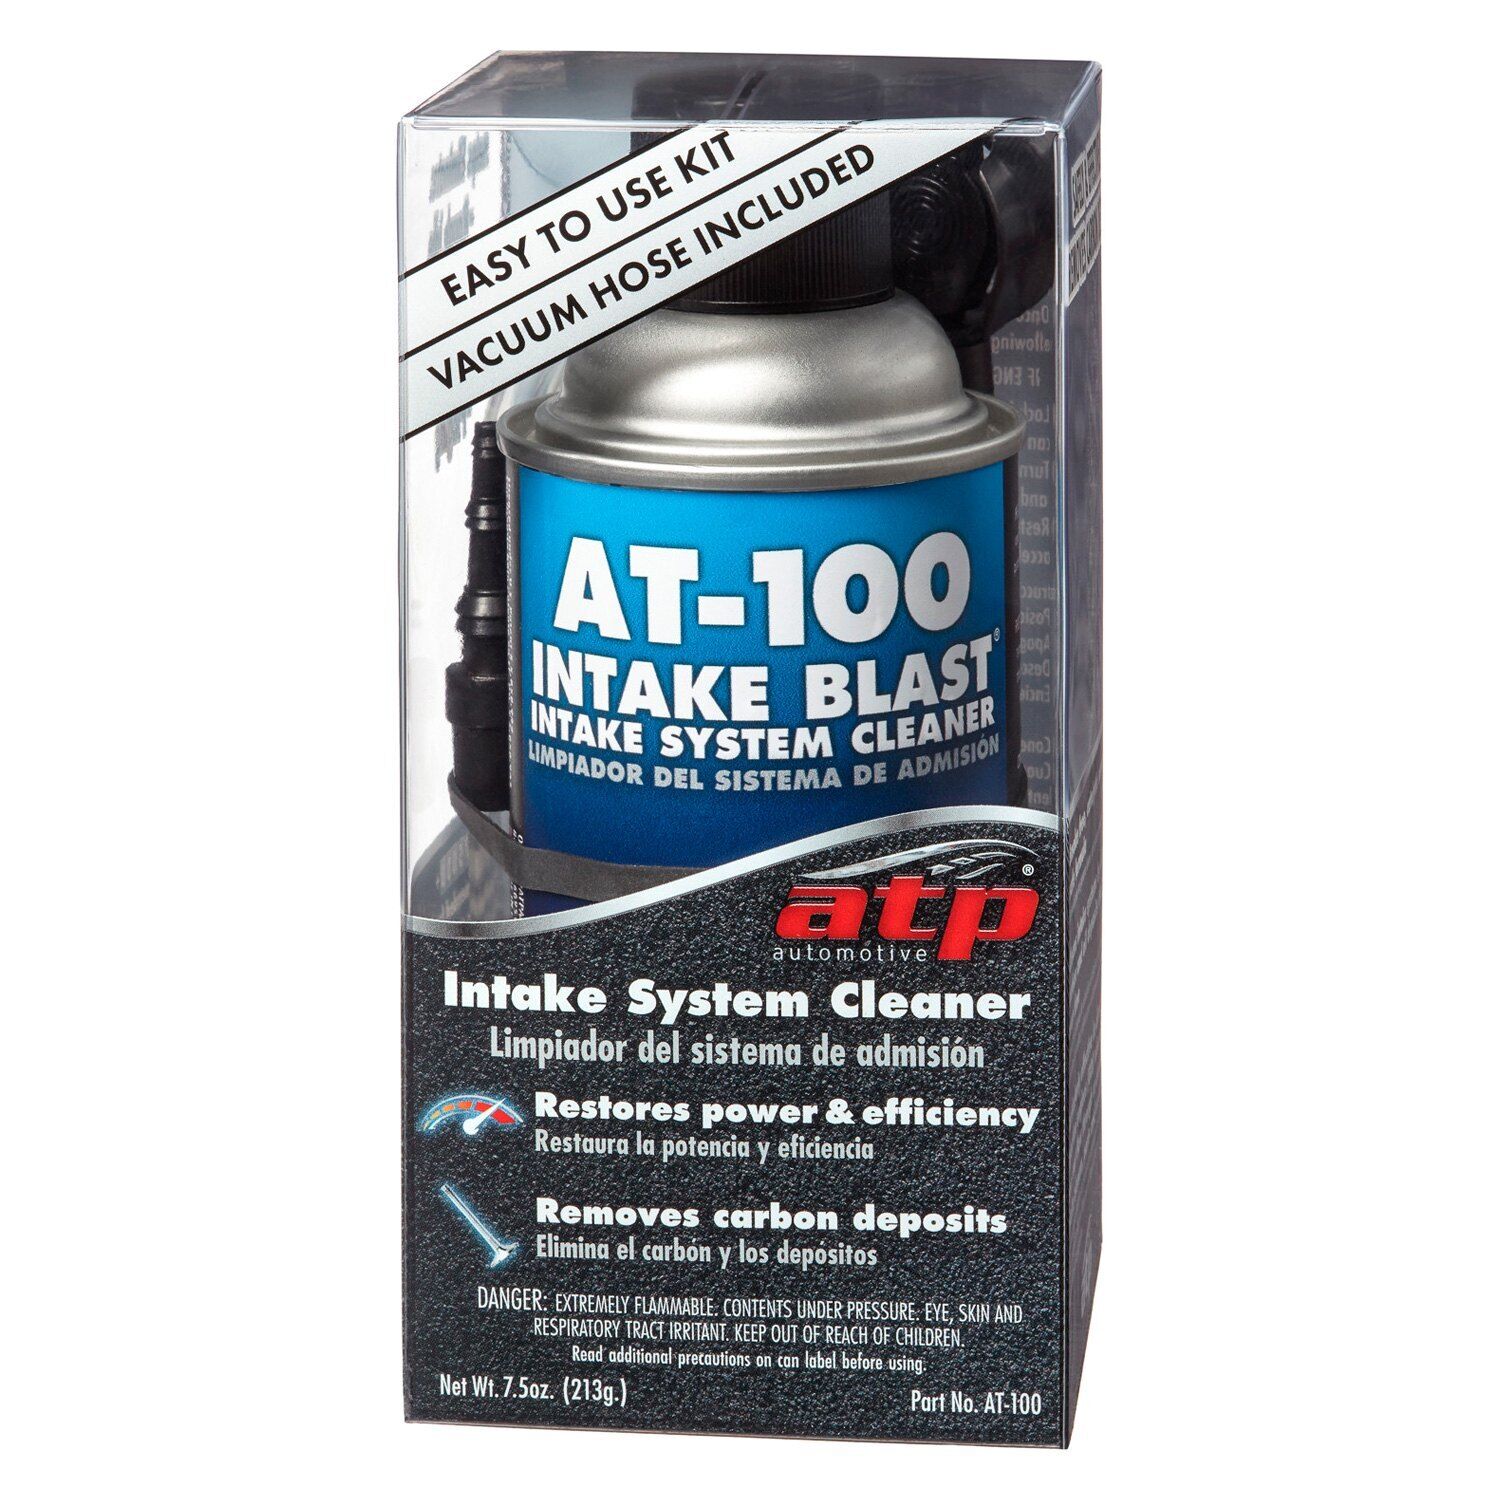 ATP Intake Blast Intake System Cleaner